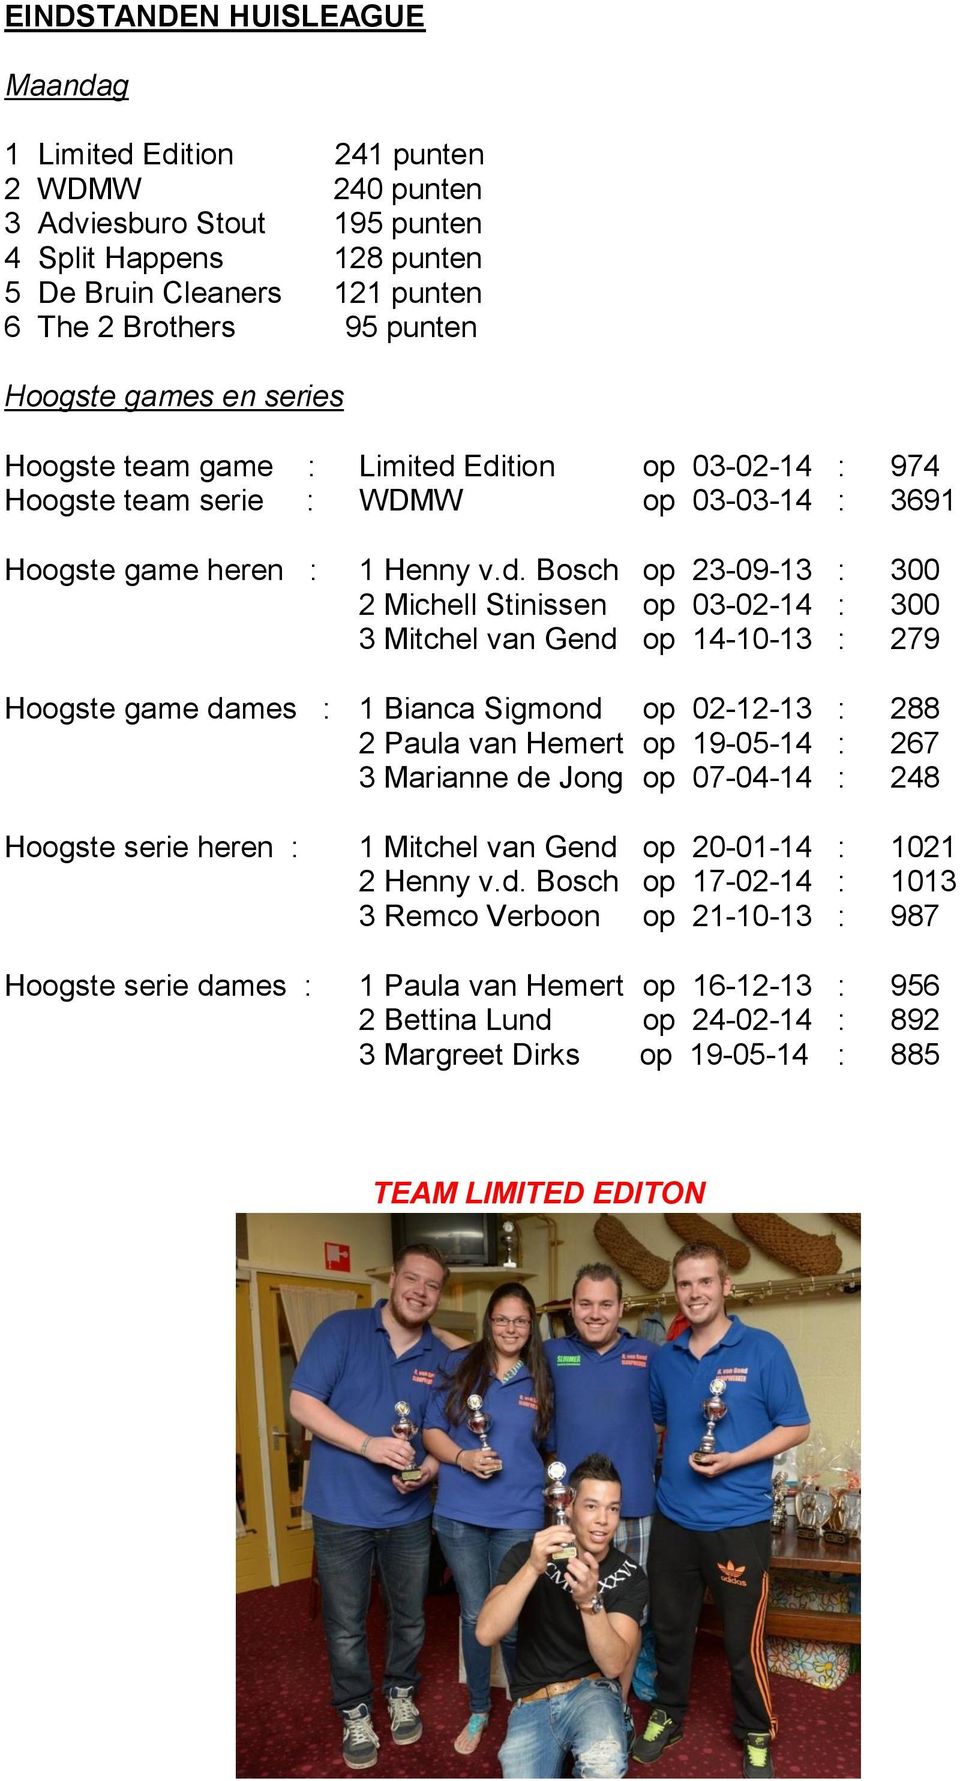 Edition op 03-02-14 : 974 Hoogste team serie : WDMW op 03-03-14 : 3691 Hoogste game heren : 1 Henny v.d. Bosch op 23-09-13 : 300 2 Michell Stinissen op 03-02-14 : 300 3 Mitchel van Gend op 14-10-13 :